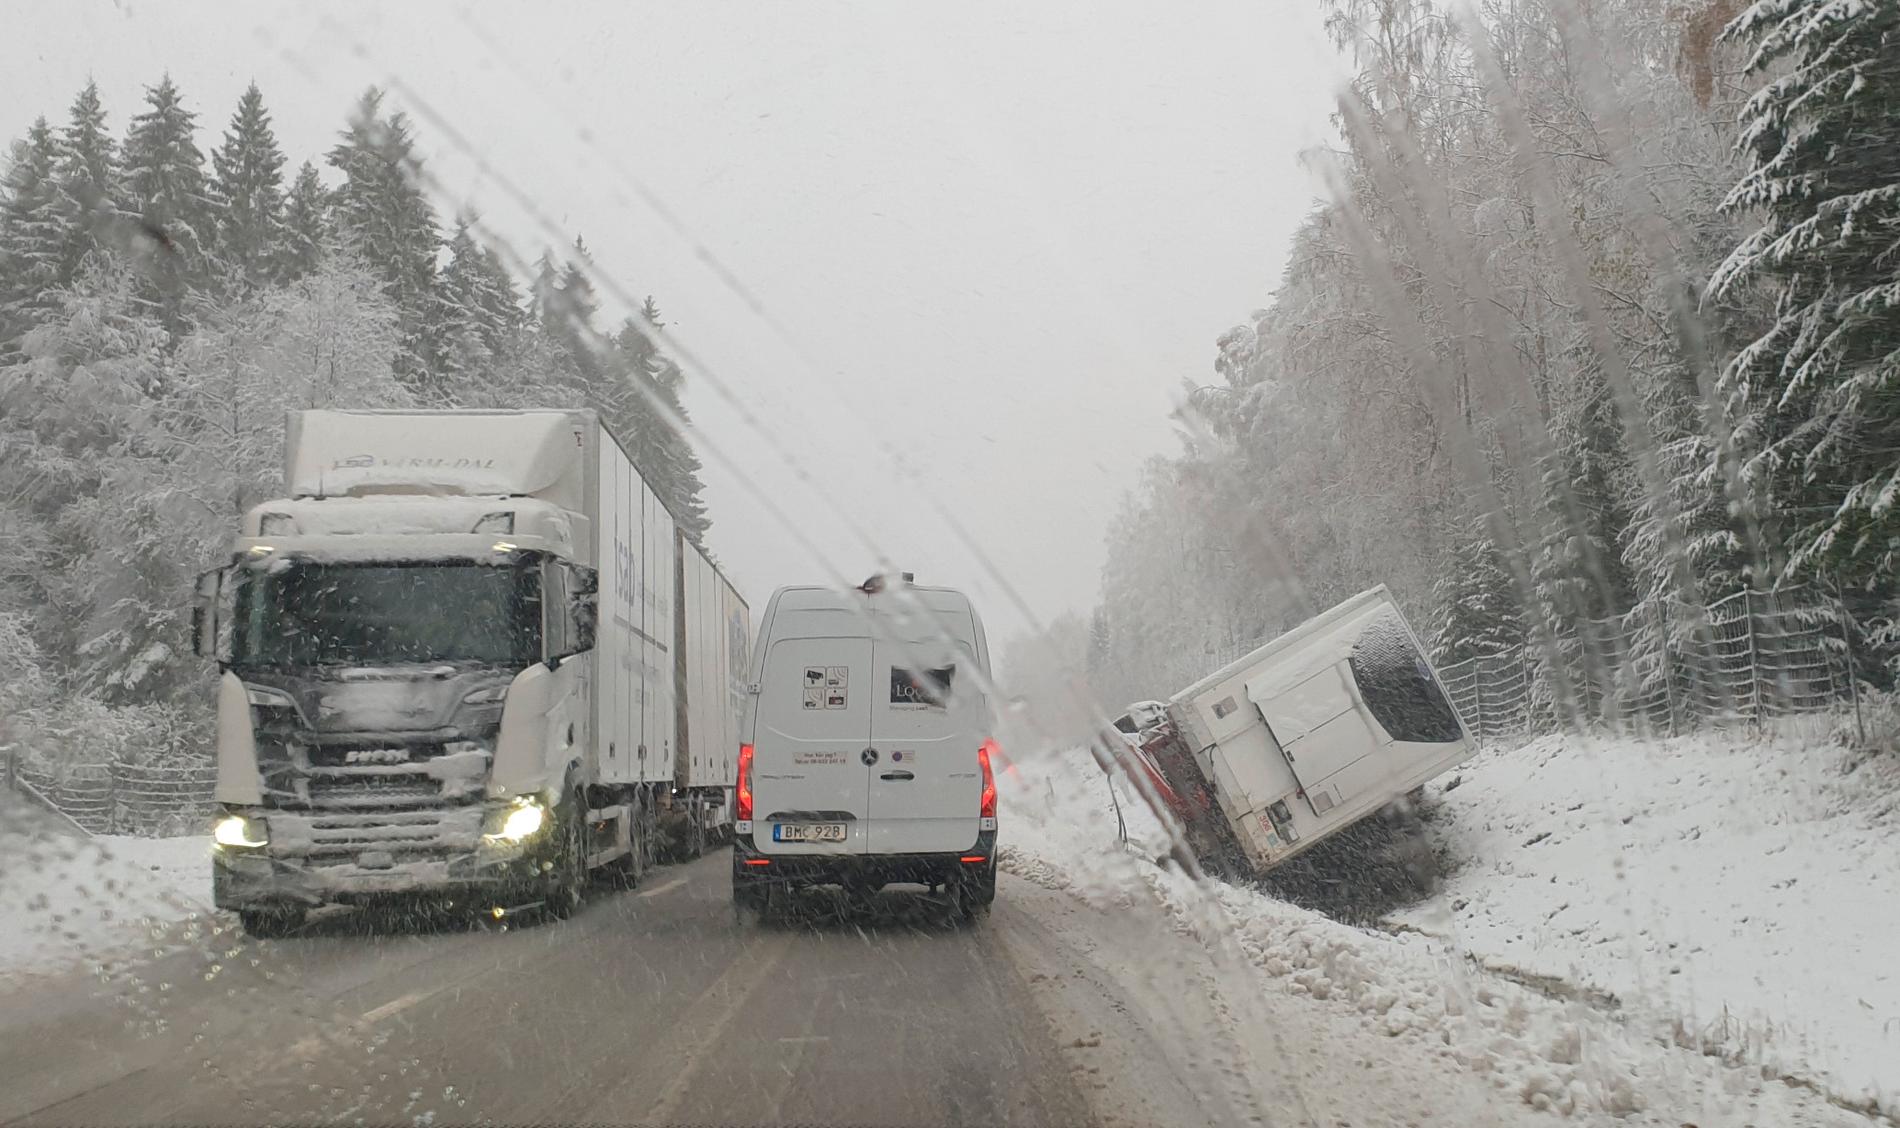 Olycka med långtradare nära Grums i Värmland